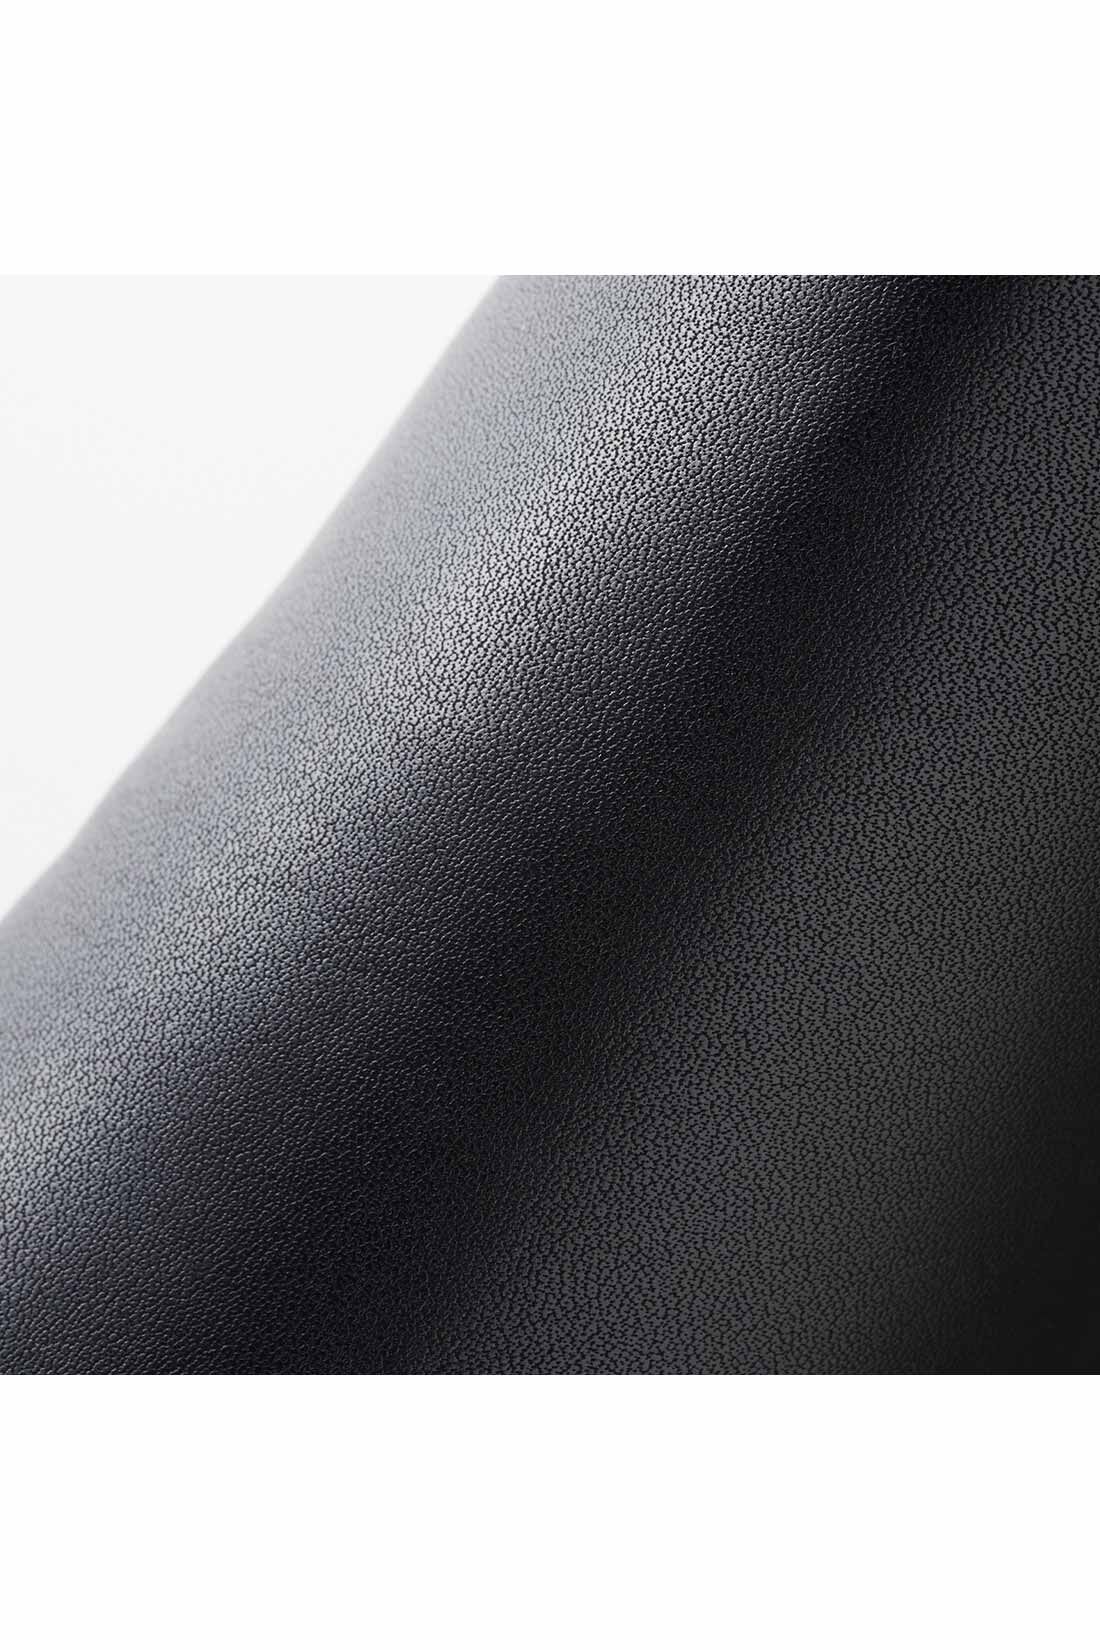 IEDIT[イディット]　どんなコーデにもすっきり履ける きれい見えサイドゴムショートブーツ〈ブラック〉|品よく高見えする本革ライクな合皮素材。